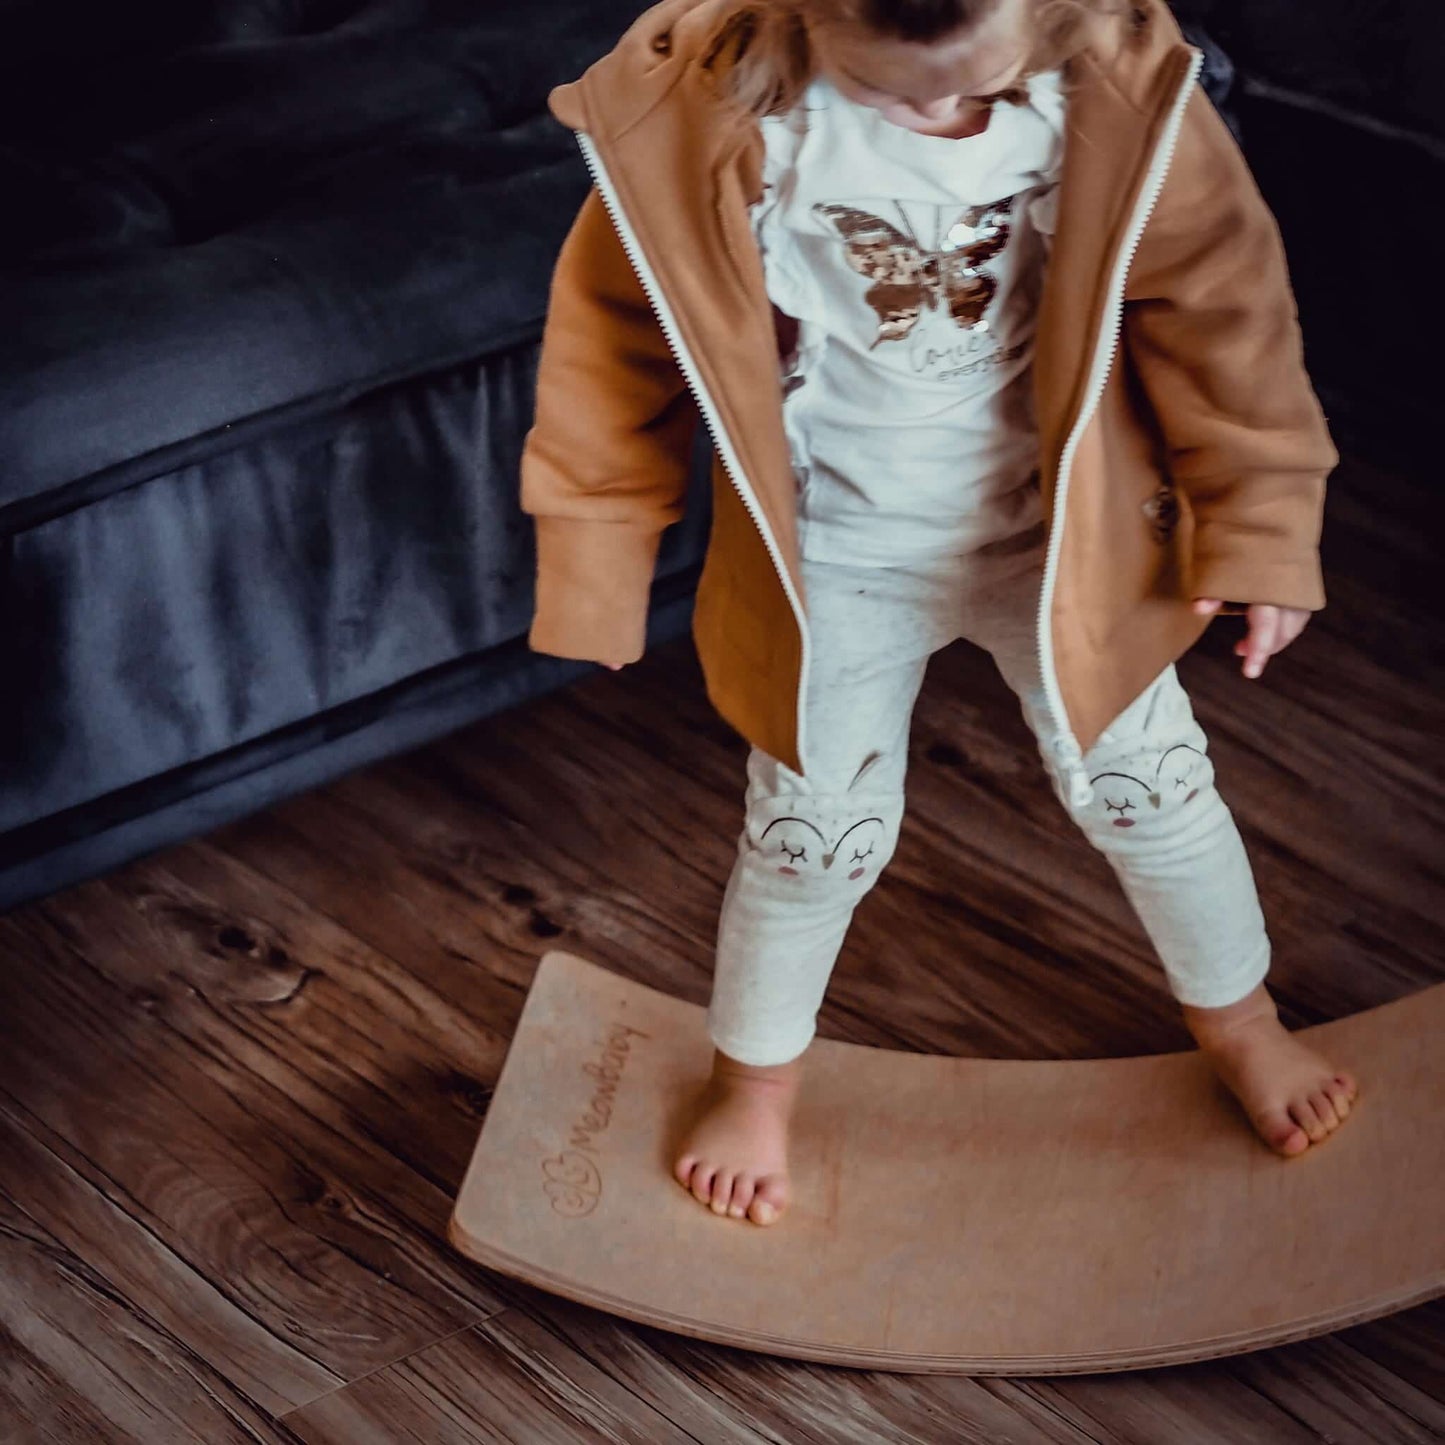 MeowBaby® Balance Board Toddler wooden balance board